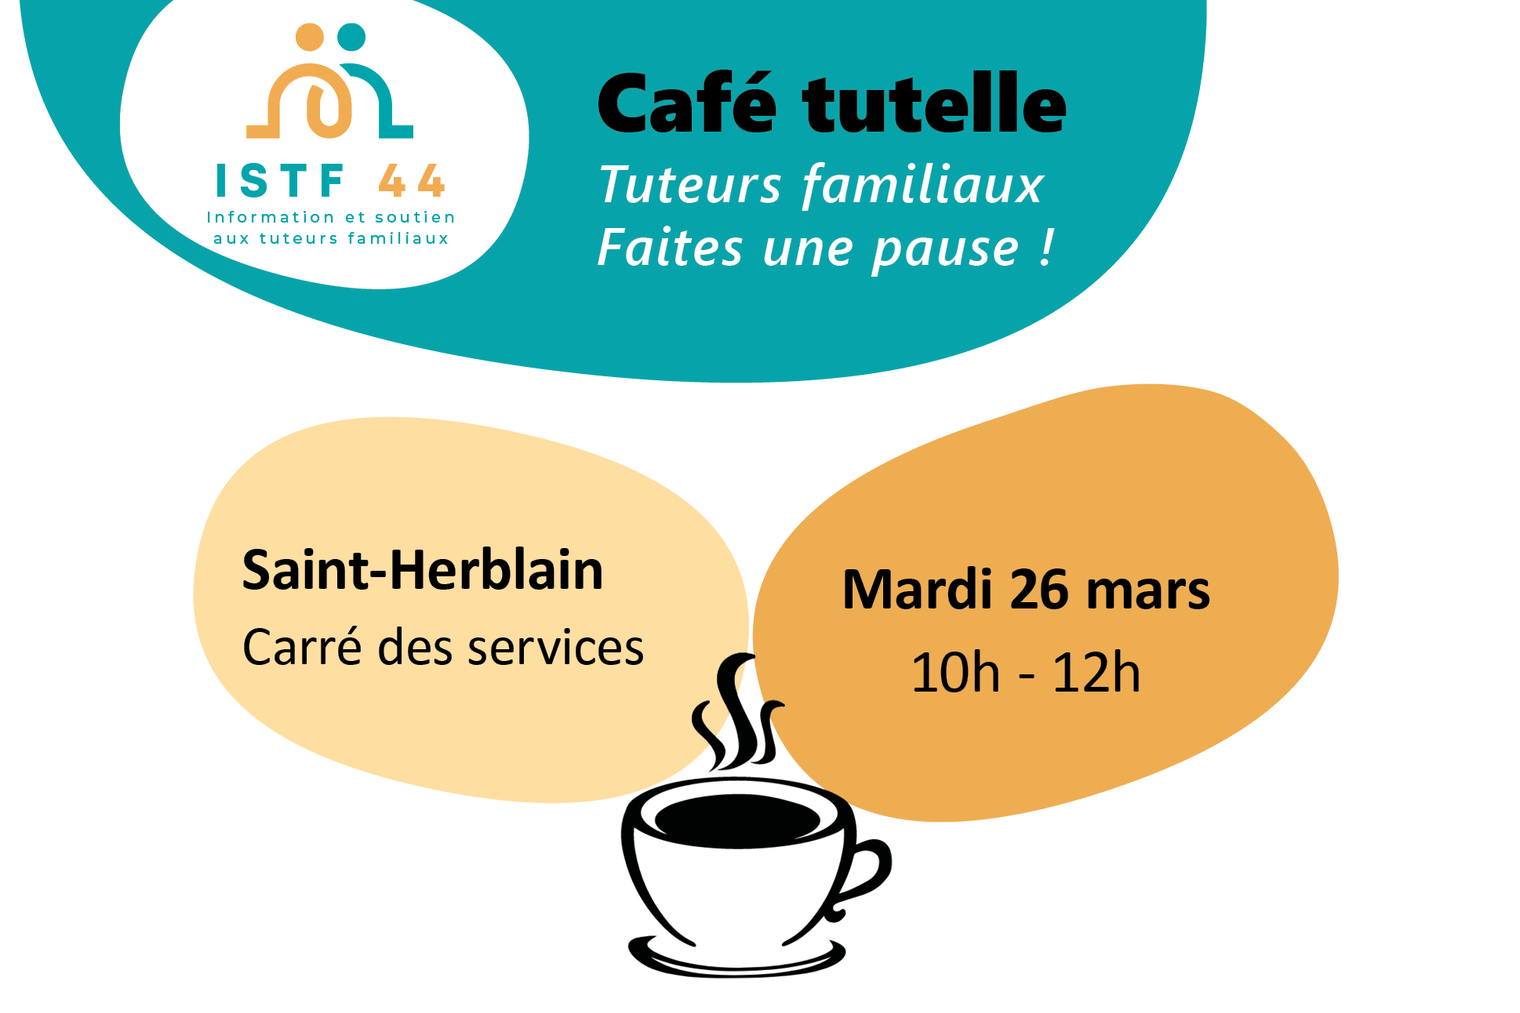 Café Tutelle - pause pour les tuteurs familiaux